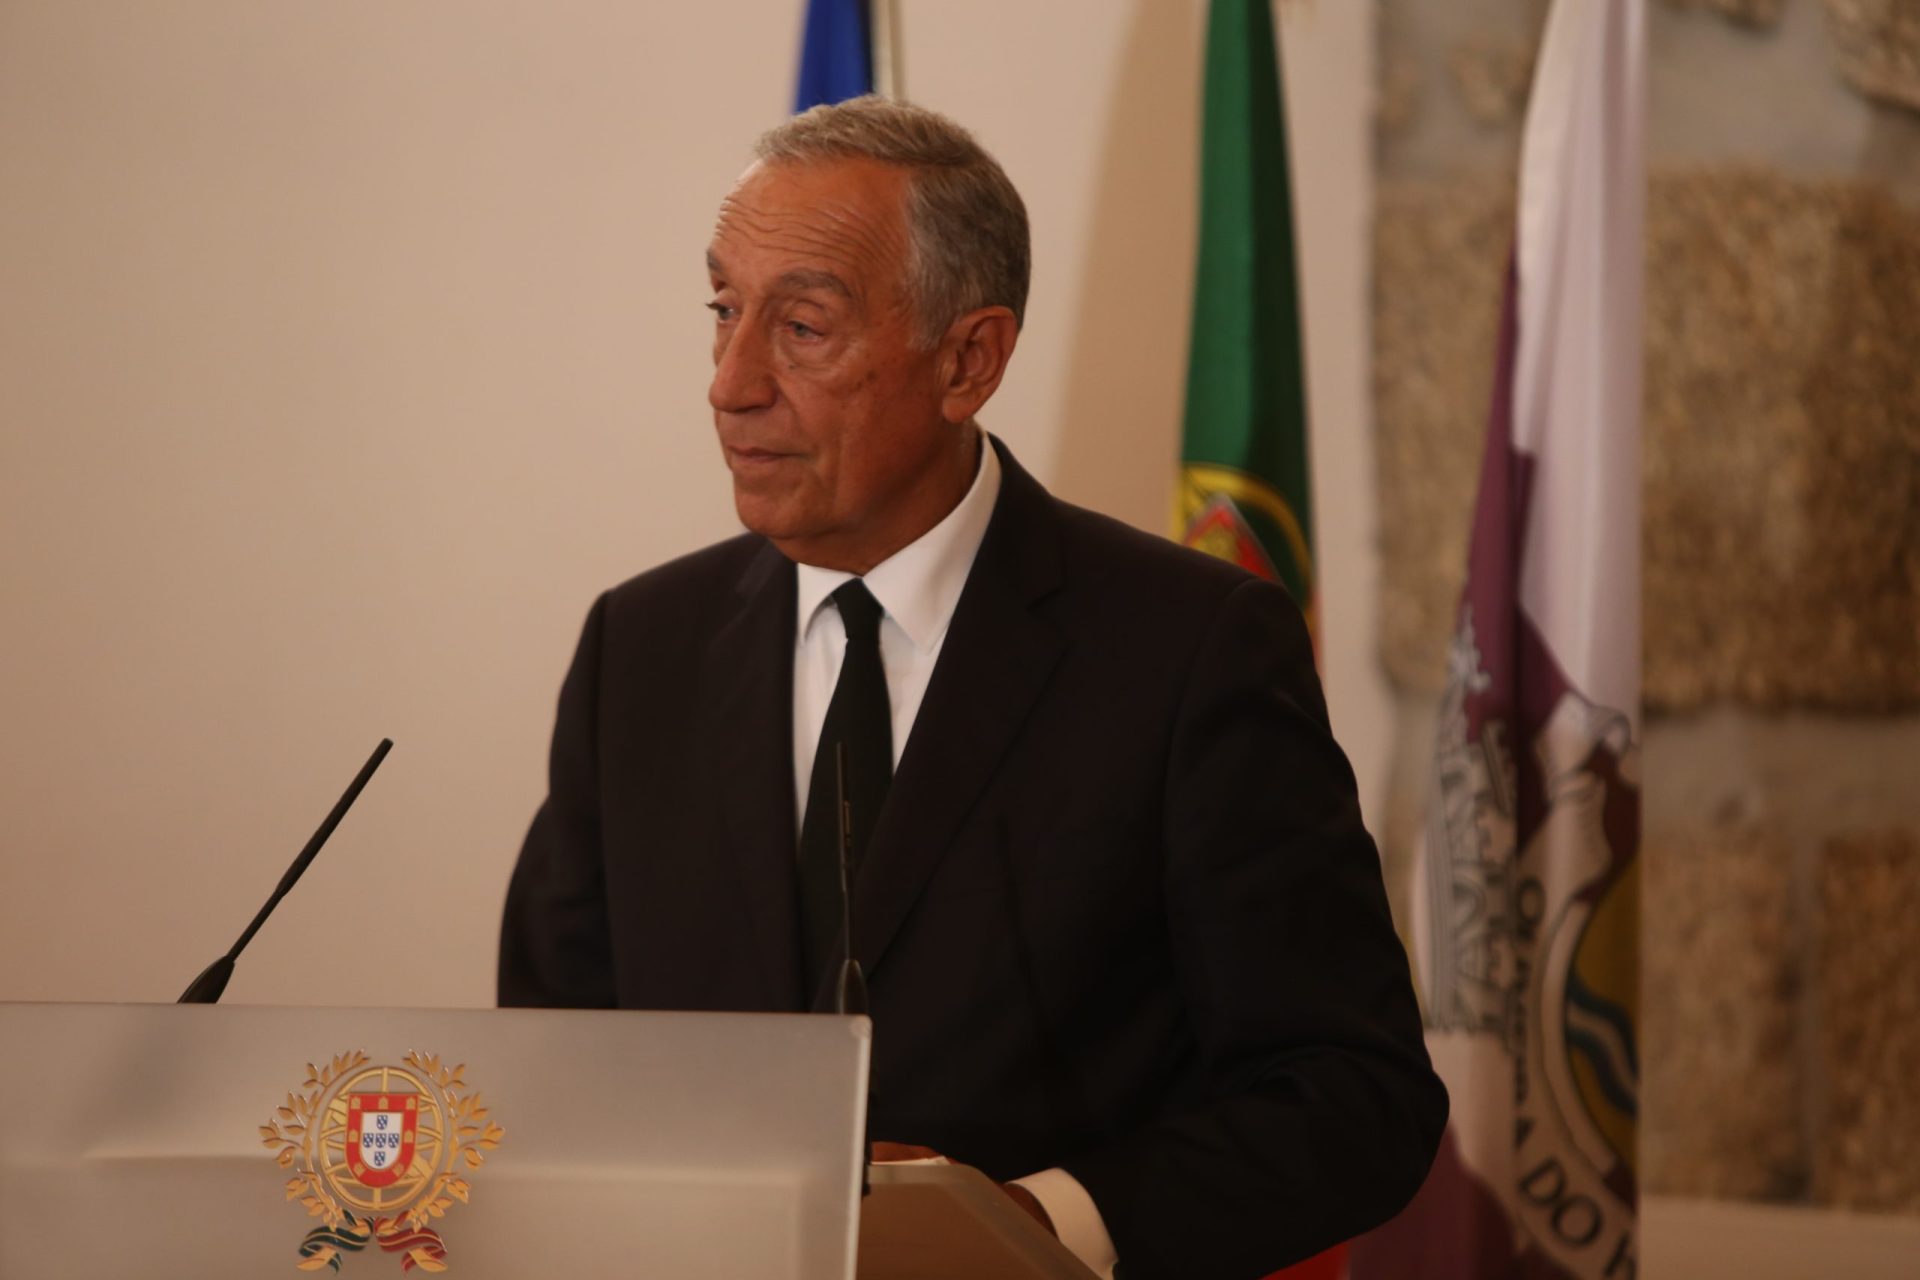 “Queremos um Portugal mais ambicioso”. Marcelo defende país inovador